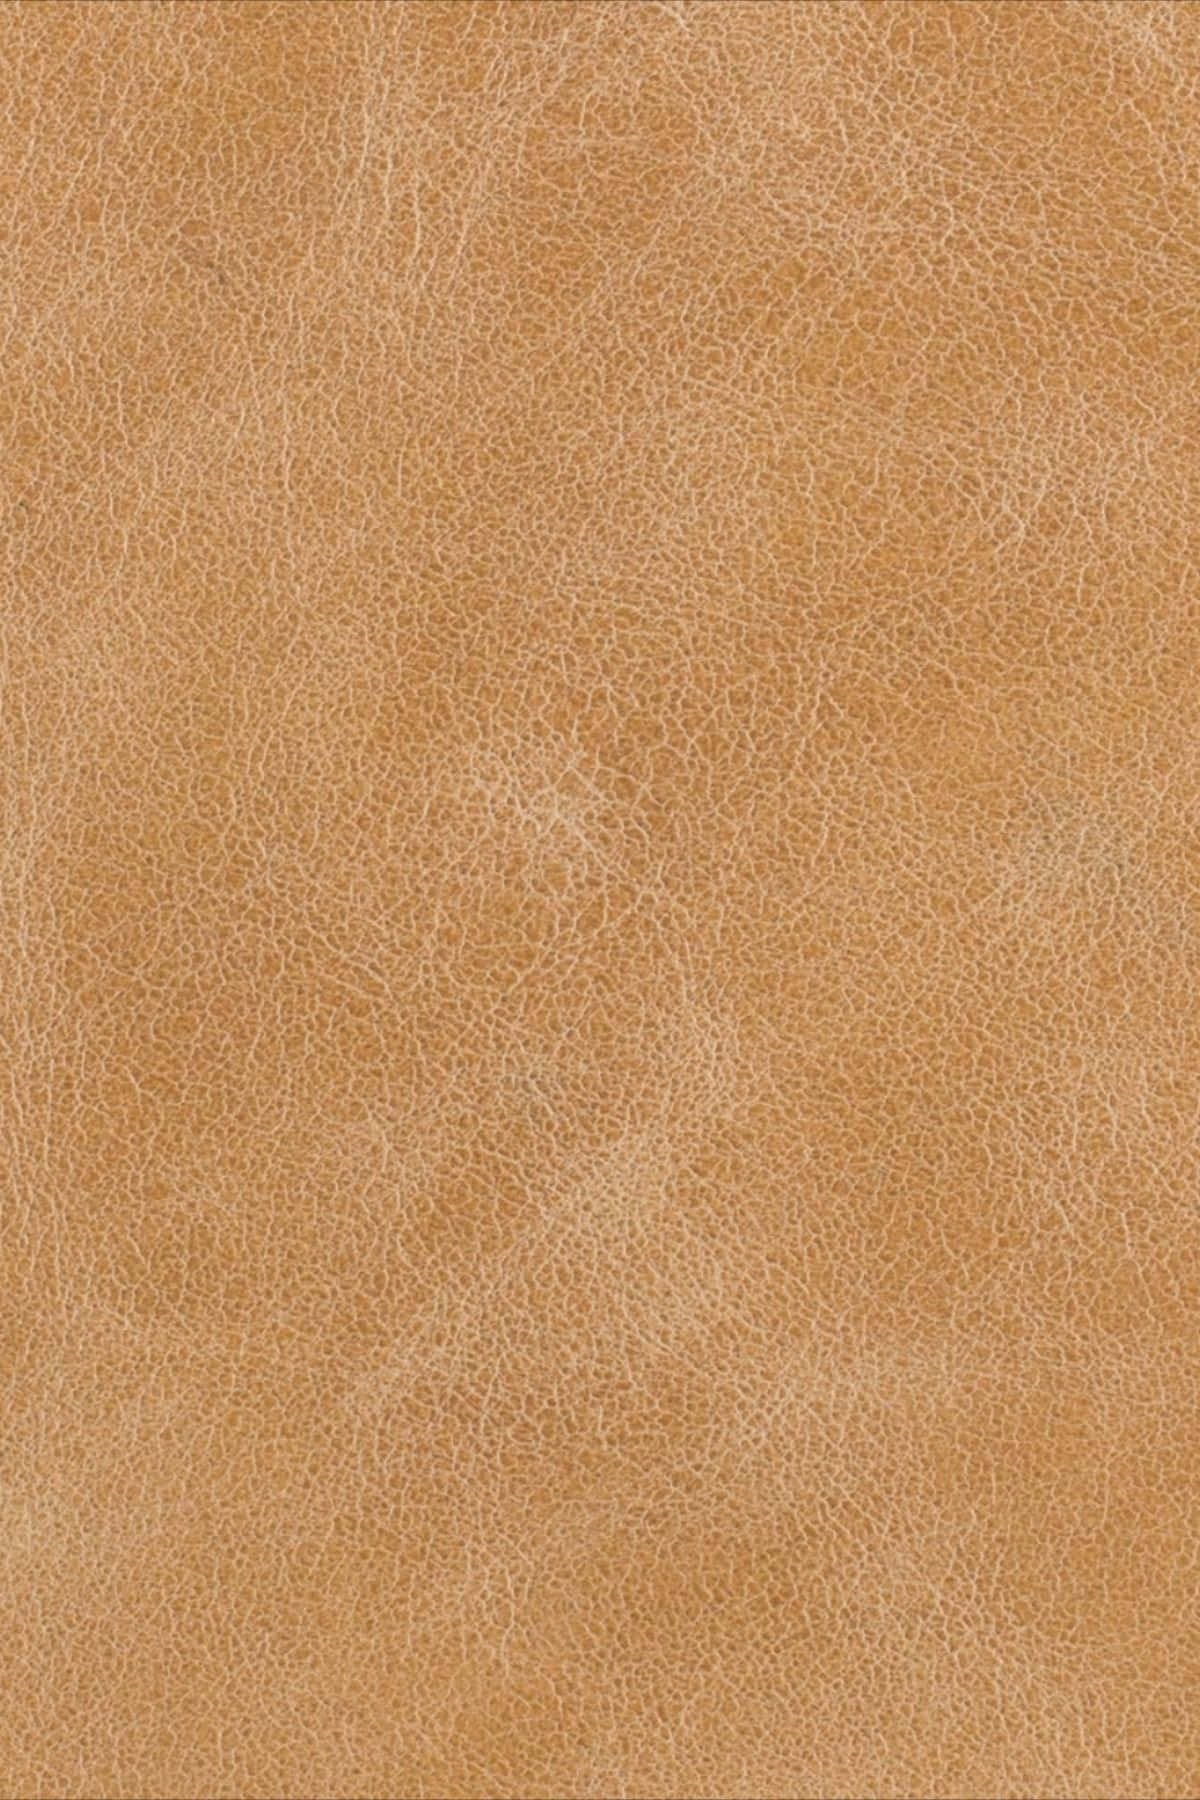 Orange Leather Texture Portrait Picture